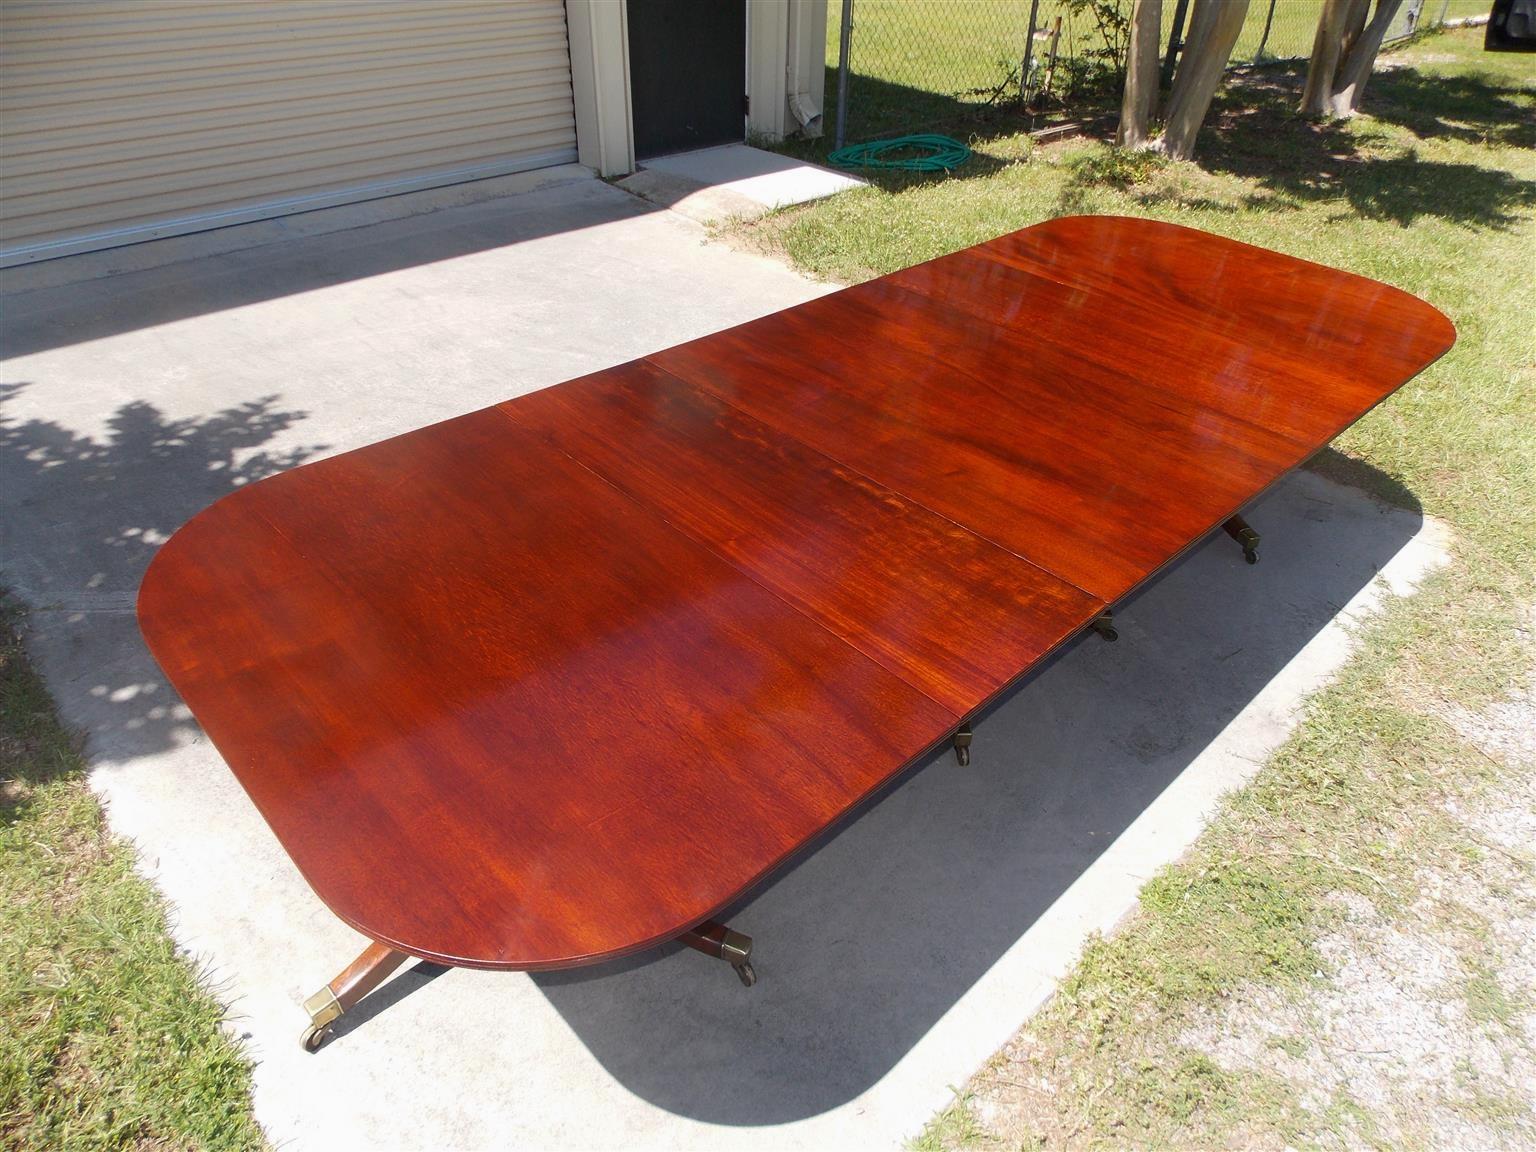 cuban mahogany table